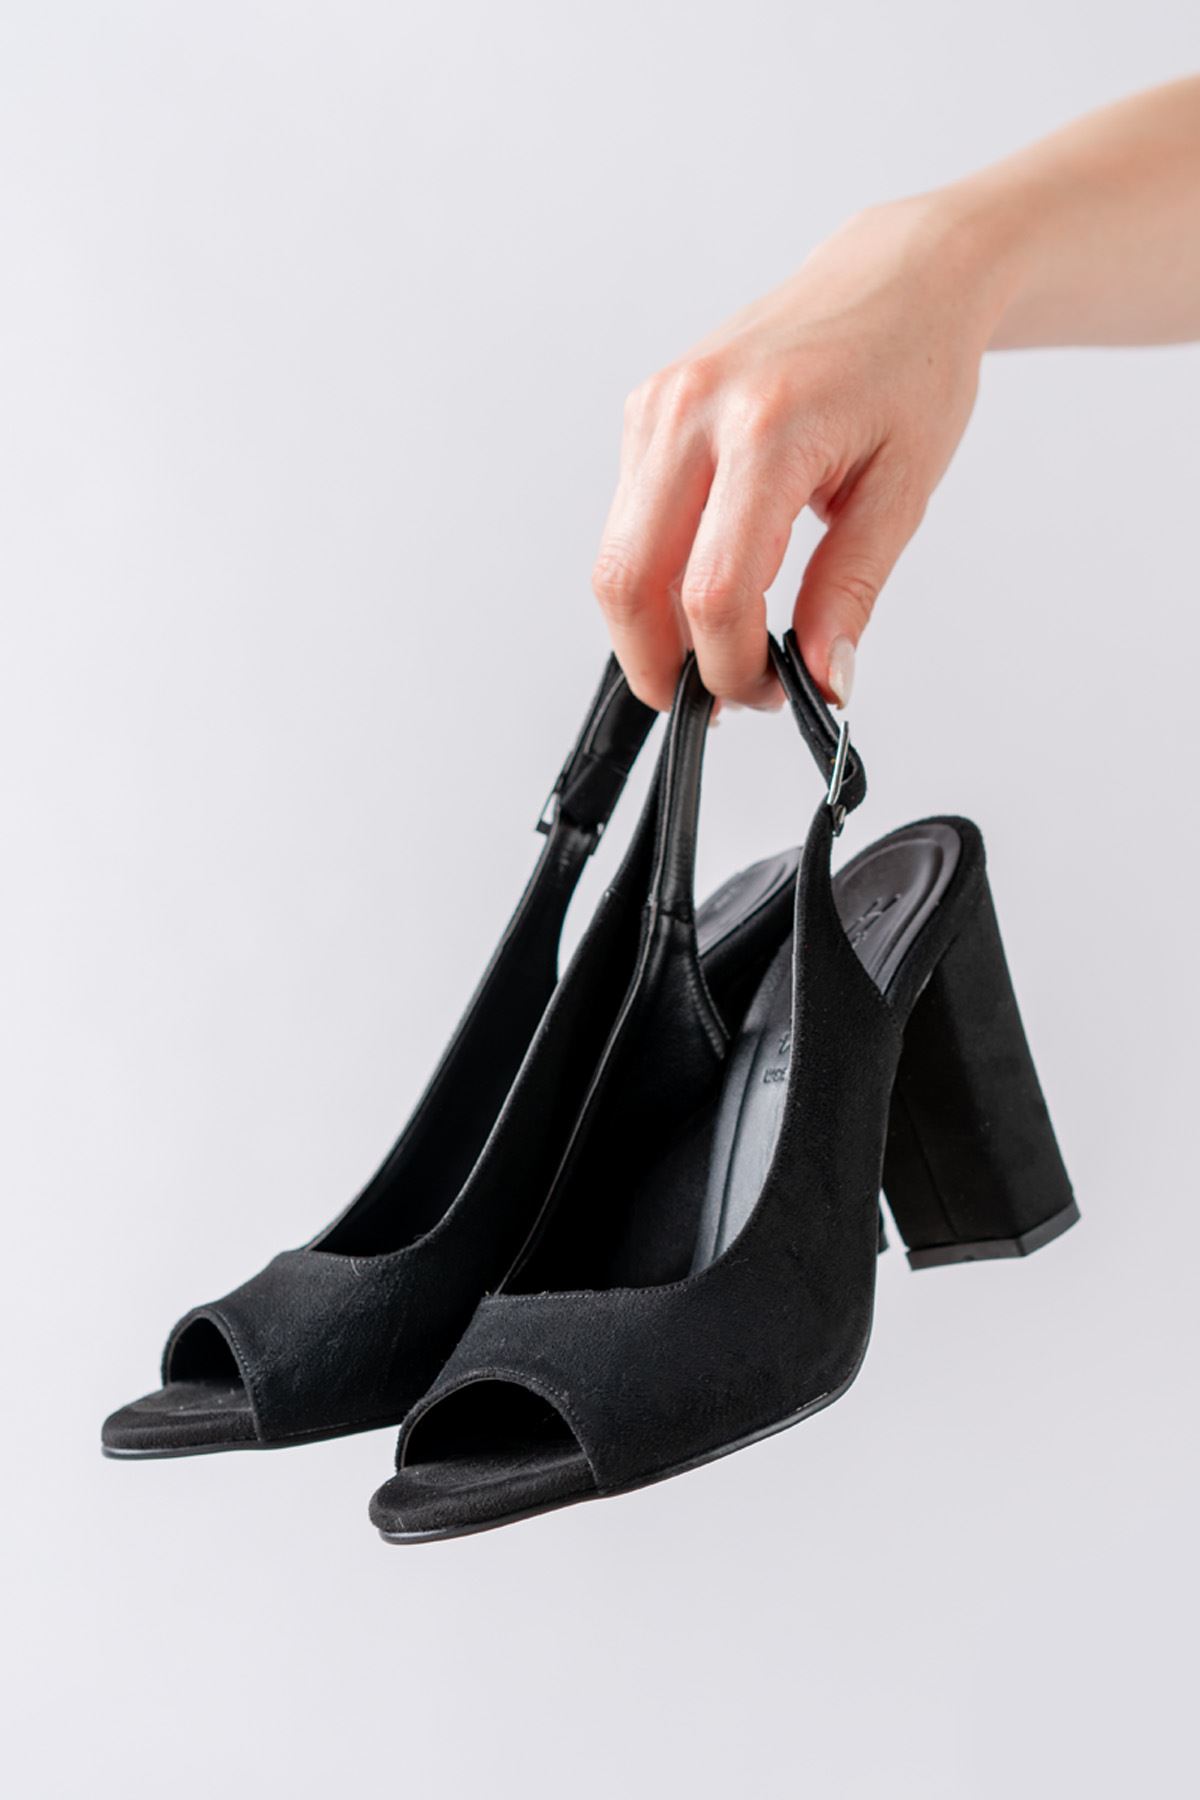 Meira Siyah Süet Detaylı Yüksek Topuklu Kadın Ayakkabı   